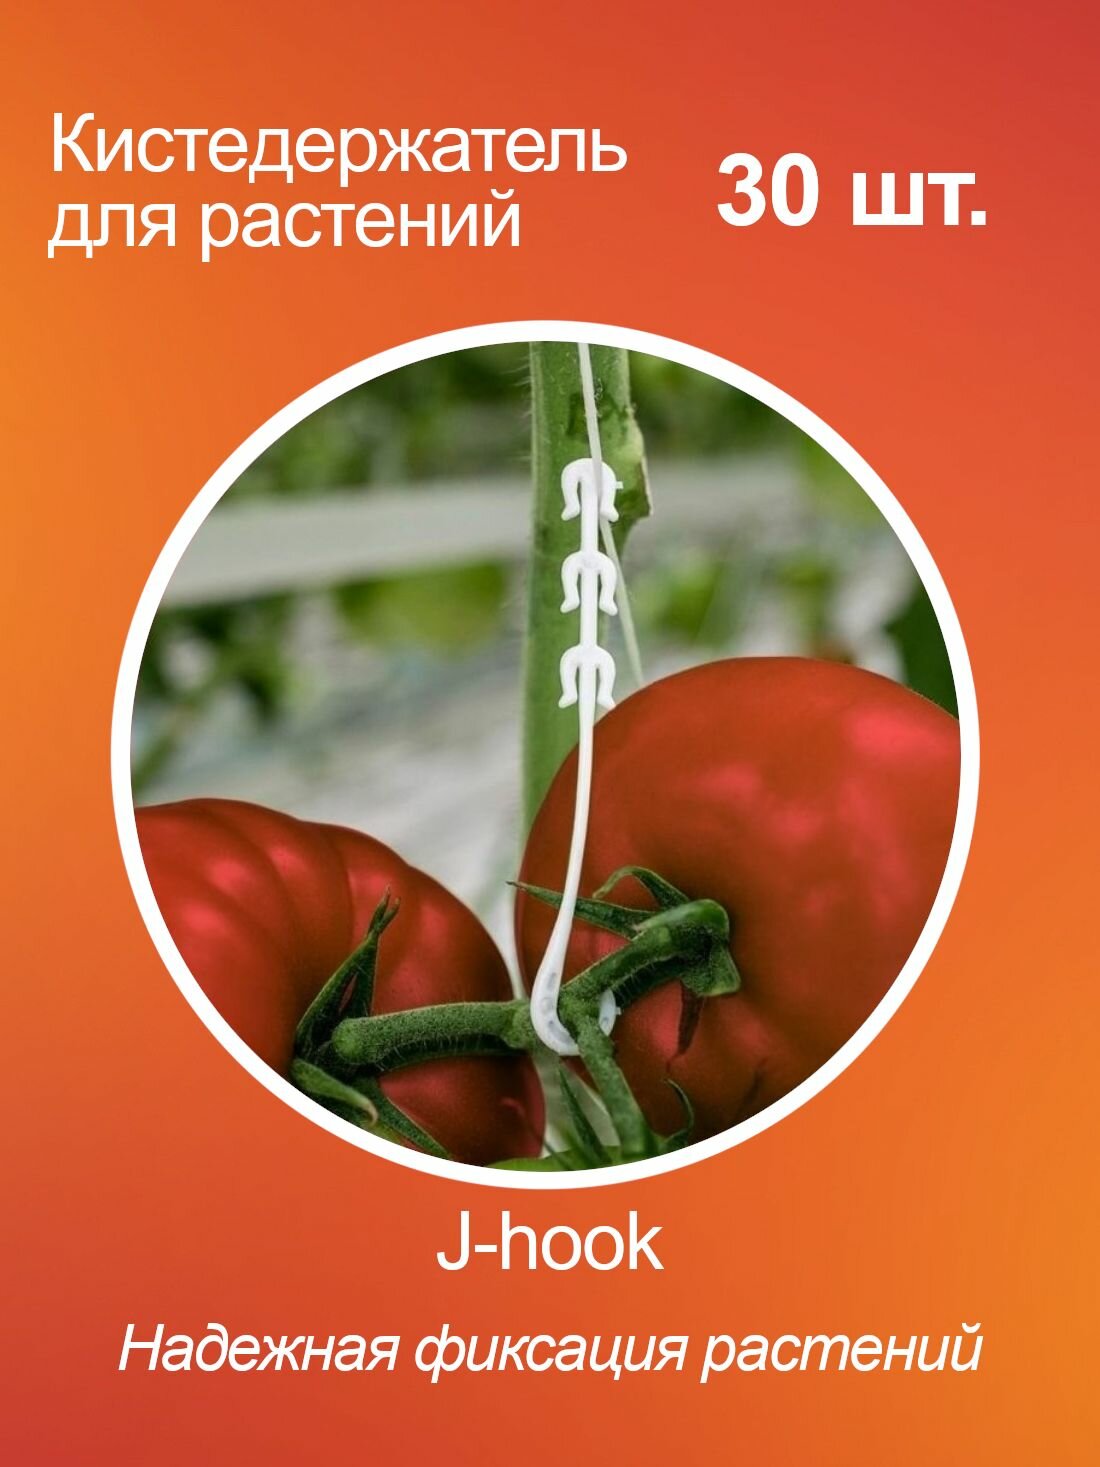 Кистедержатель для томатов помидор и растений J-hook пластик 30 шт.